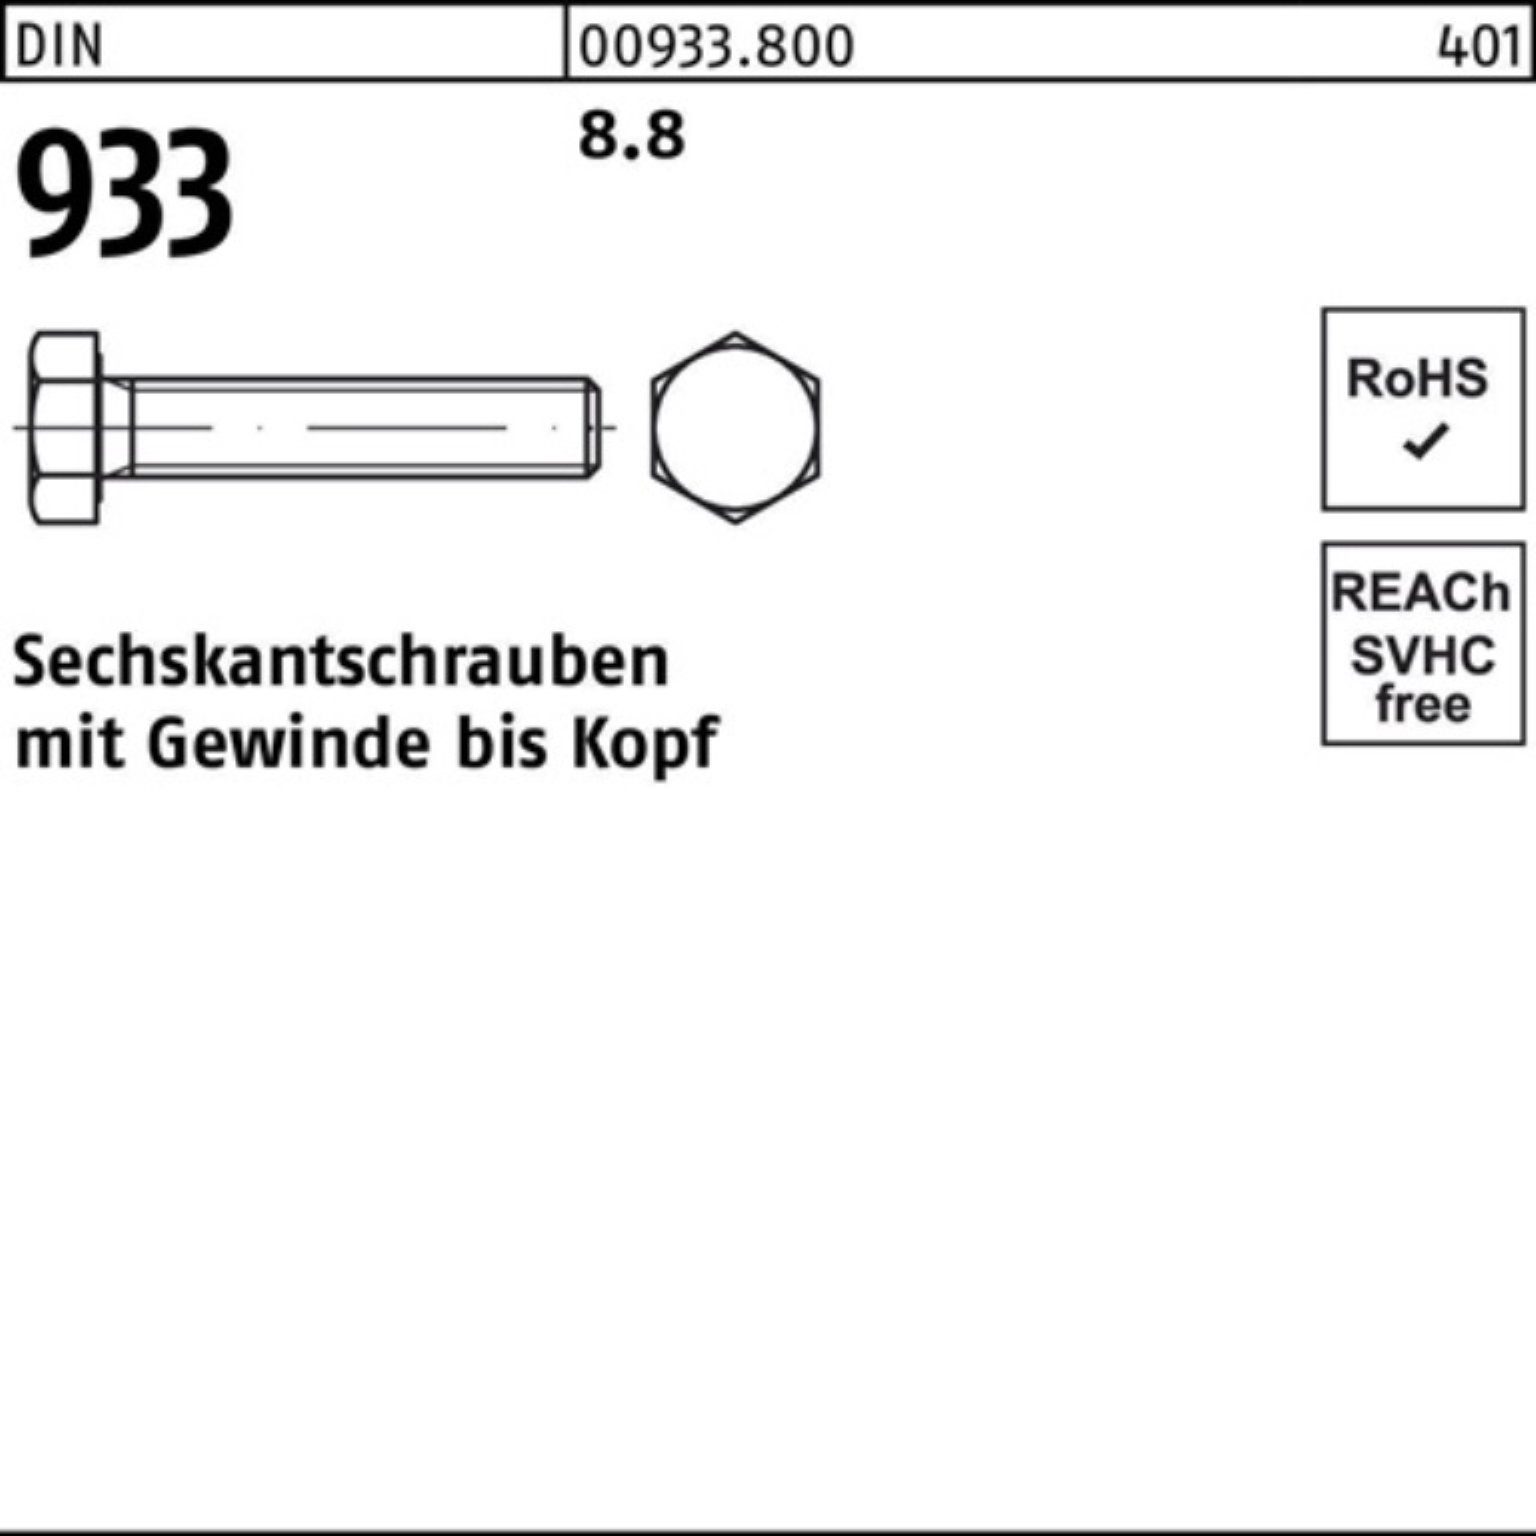 M39x DIN VG Reyher 933 Sechskantschraube 933 100er Pack Sechskantschraube 190 1 DIN Stück 8.8